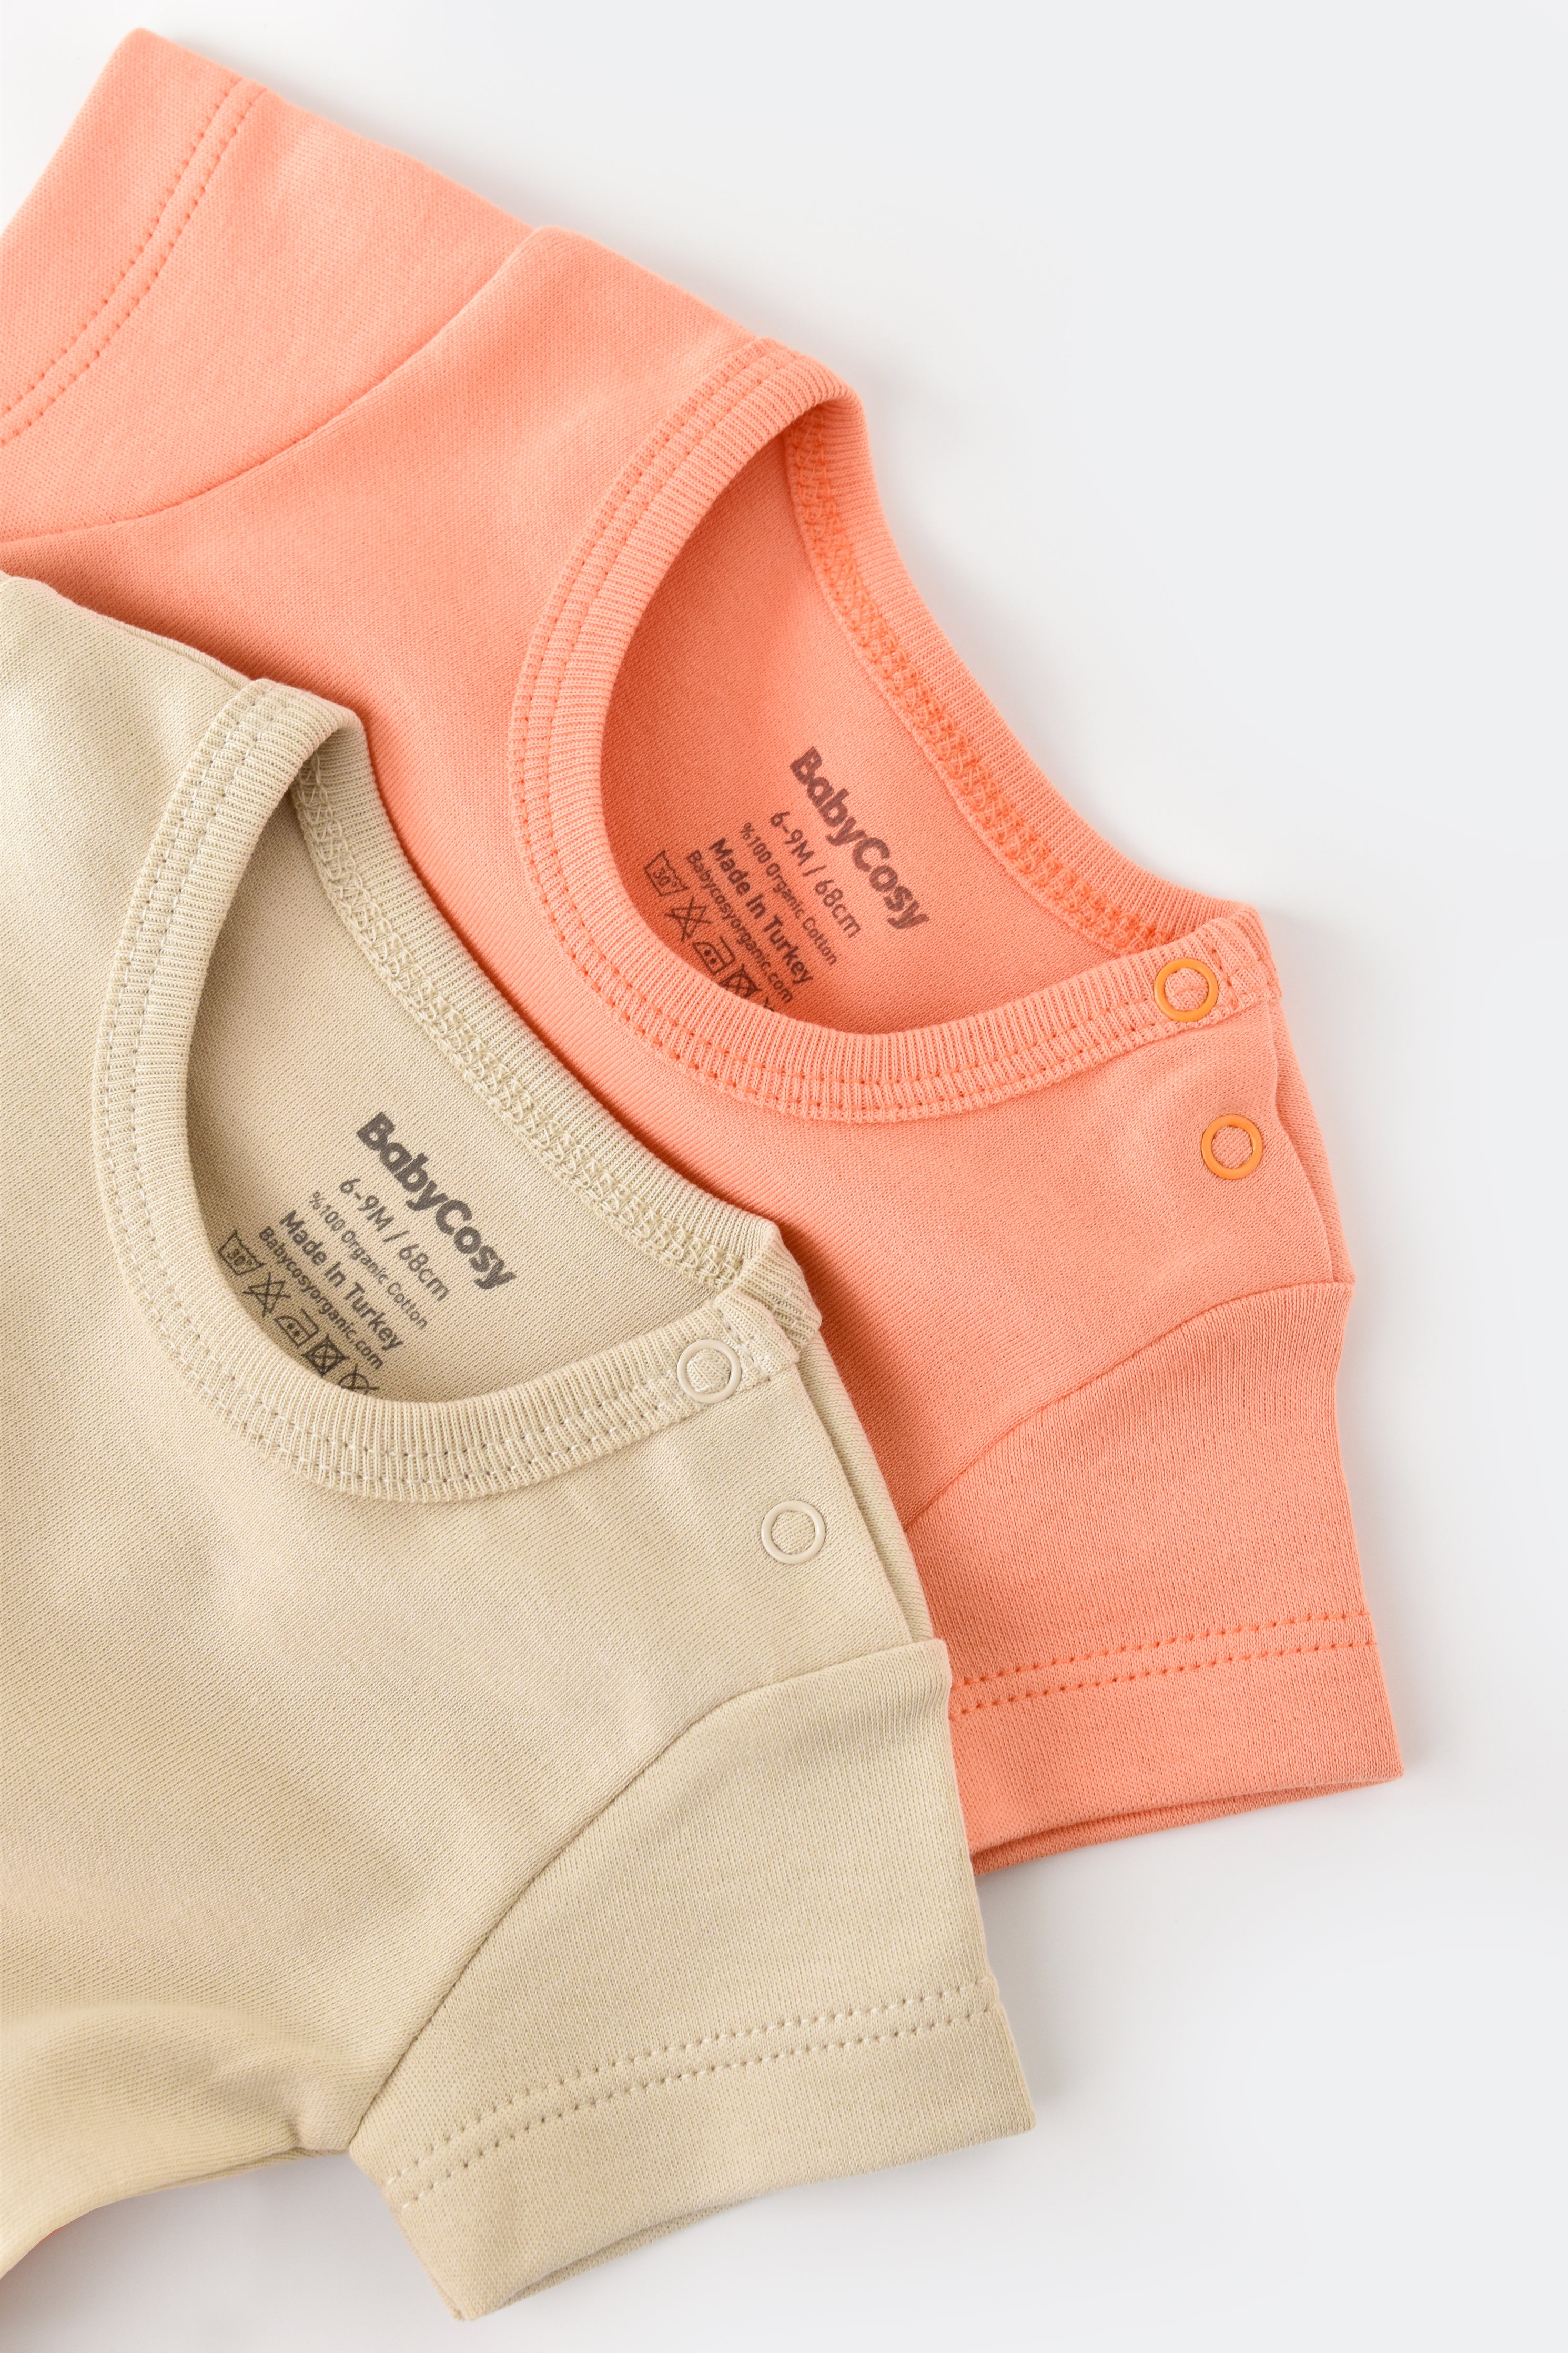 Body manches courtes pour bébé couleur rose claire crème en 100% coton biologique GOTS interlock Slow fashion vêtement bio bébé éthique durable éco-responsable